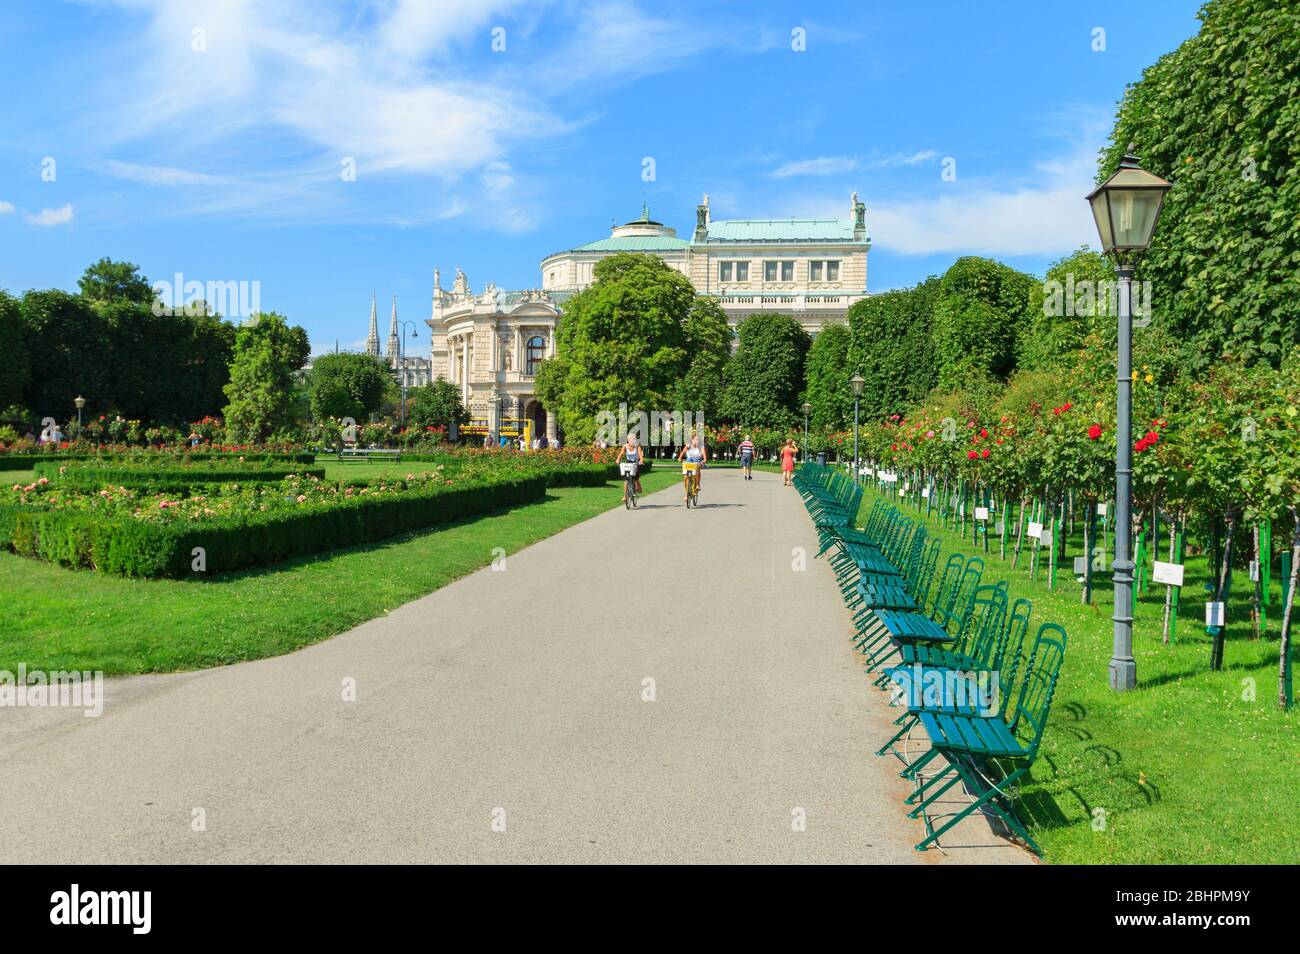 Wien, Österreich - 23. Juli 2017:Volksgarten Park mit Blick auf das berühmte Wiener Burgtheater in Wien, Österreich Stockfoto